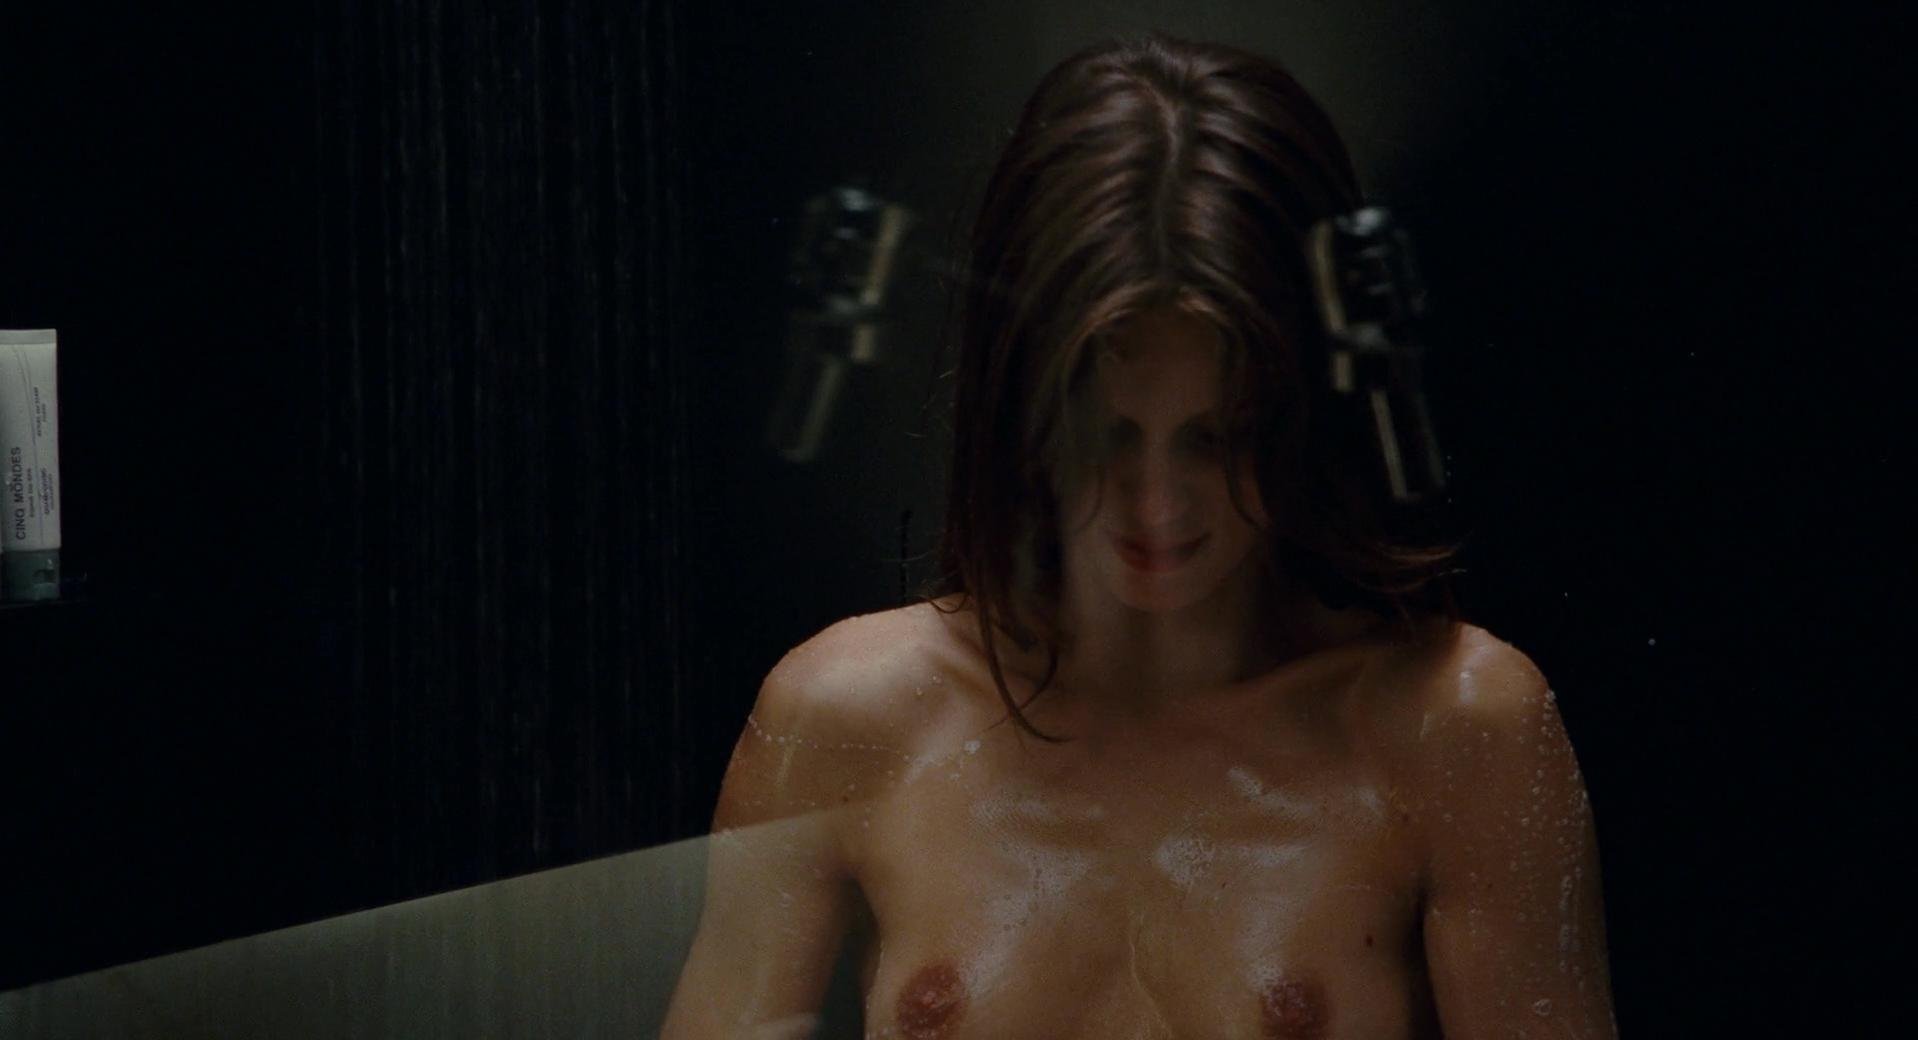 Nude Video Celebs Marine Vacth Nude Jeune Jolie 2013